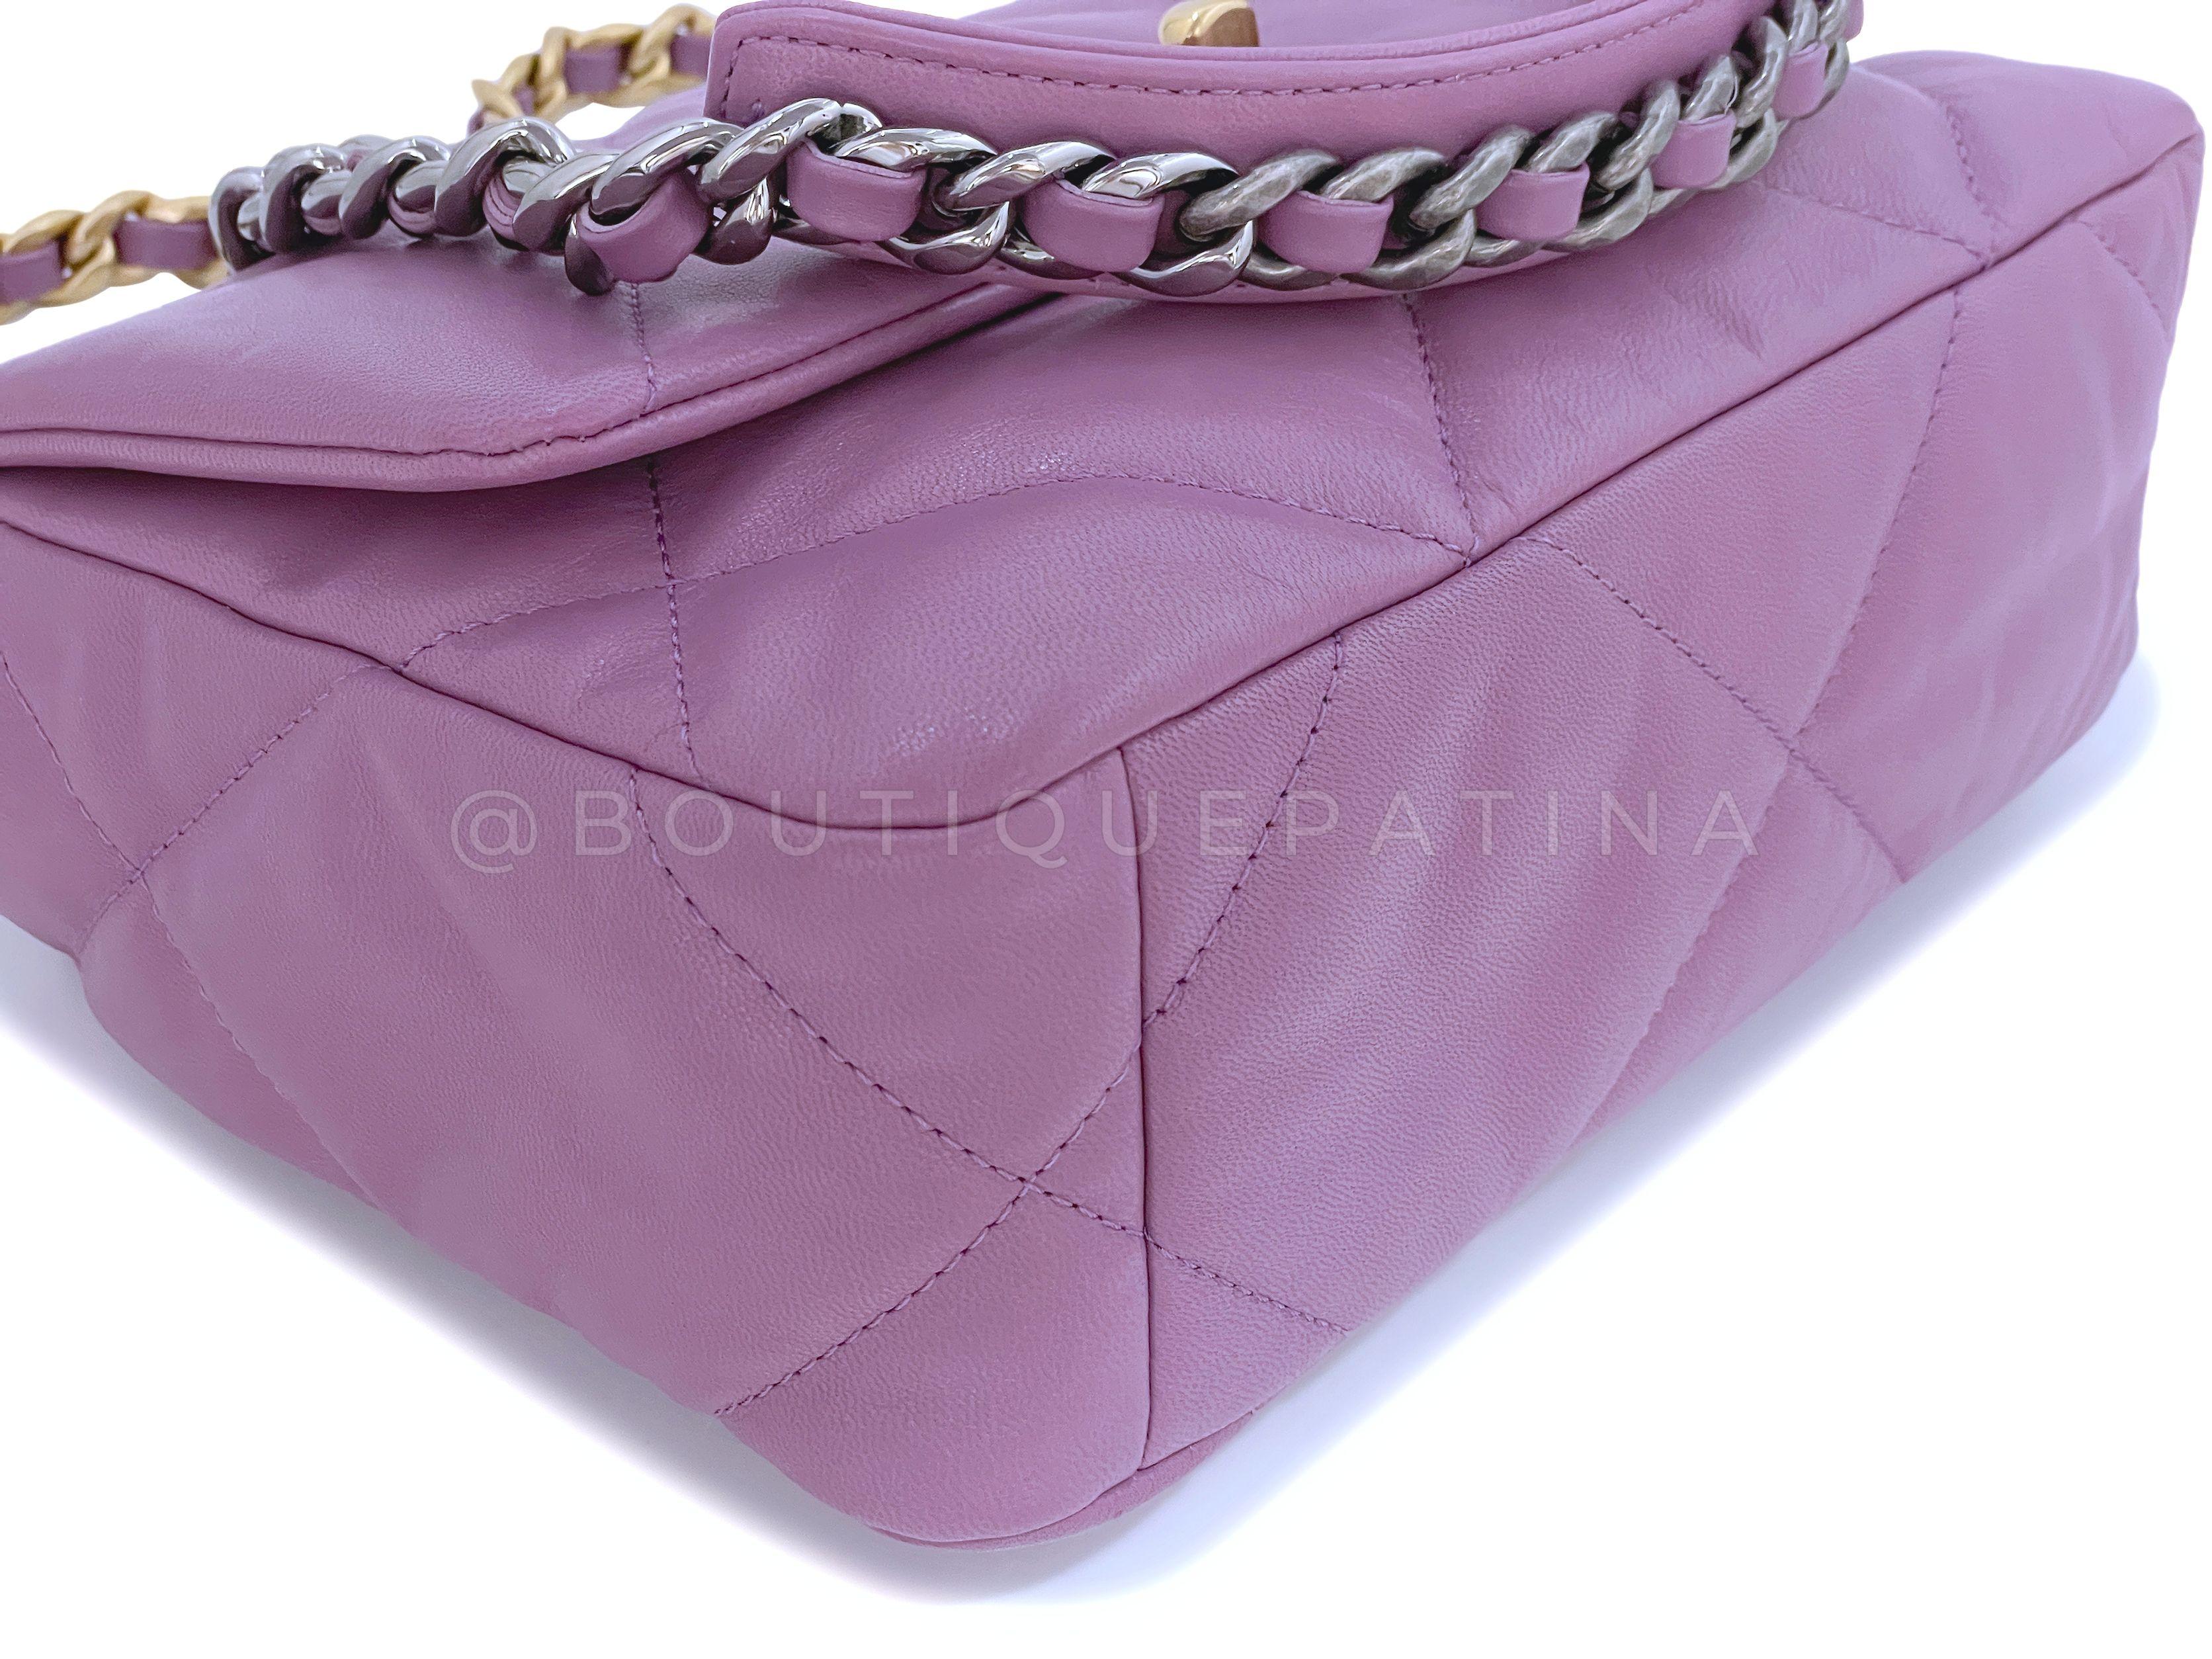 Women's Chanel 19 20B Lavender Mauve Medium Flap Bag 65463 For Sale